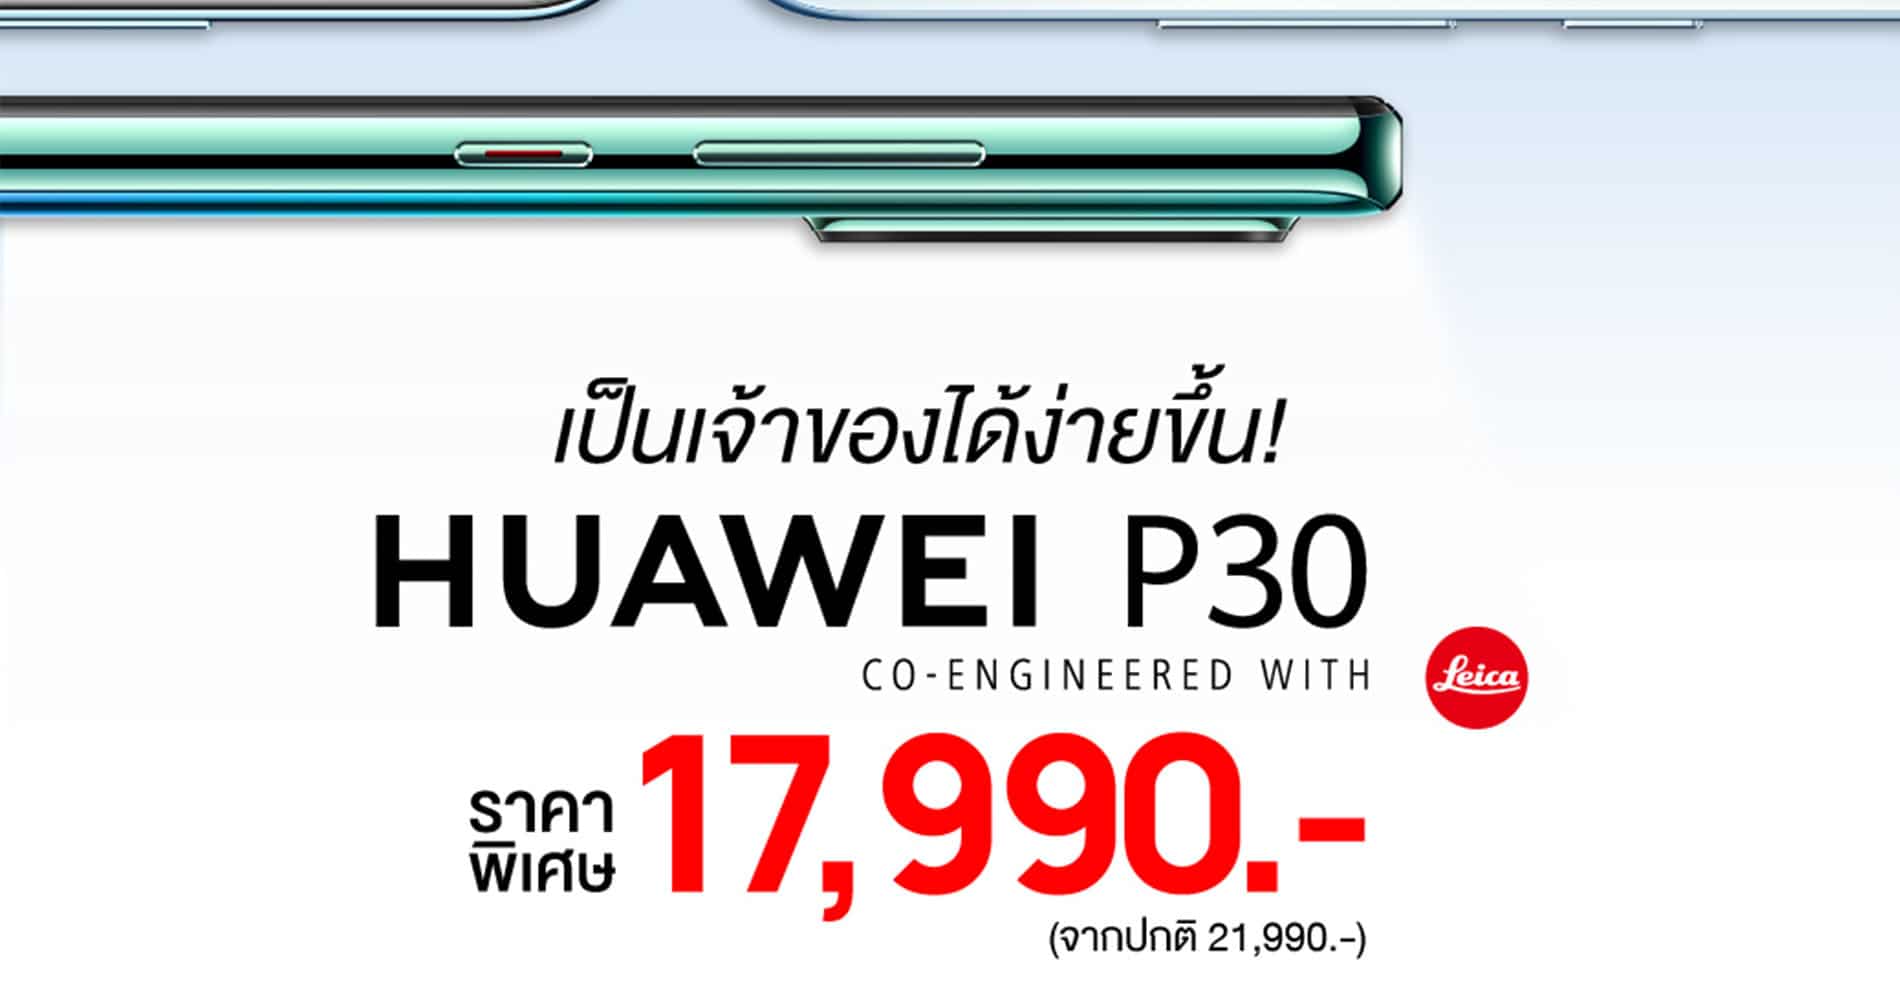 Huawei P30 สมาร์ทโฟนแฟลกชิฟกล้องเทพในราคาใหม่ให้คุณเป็นเจ้าของได้ง่ายขึ้น เหลือเพียง 17,990 บาท! 1